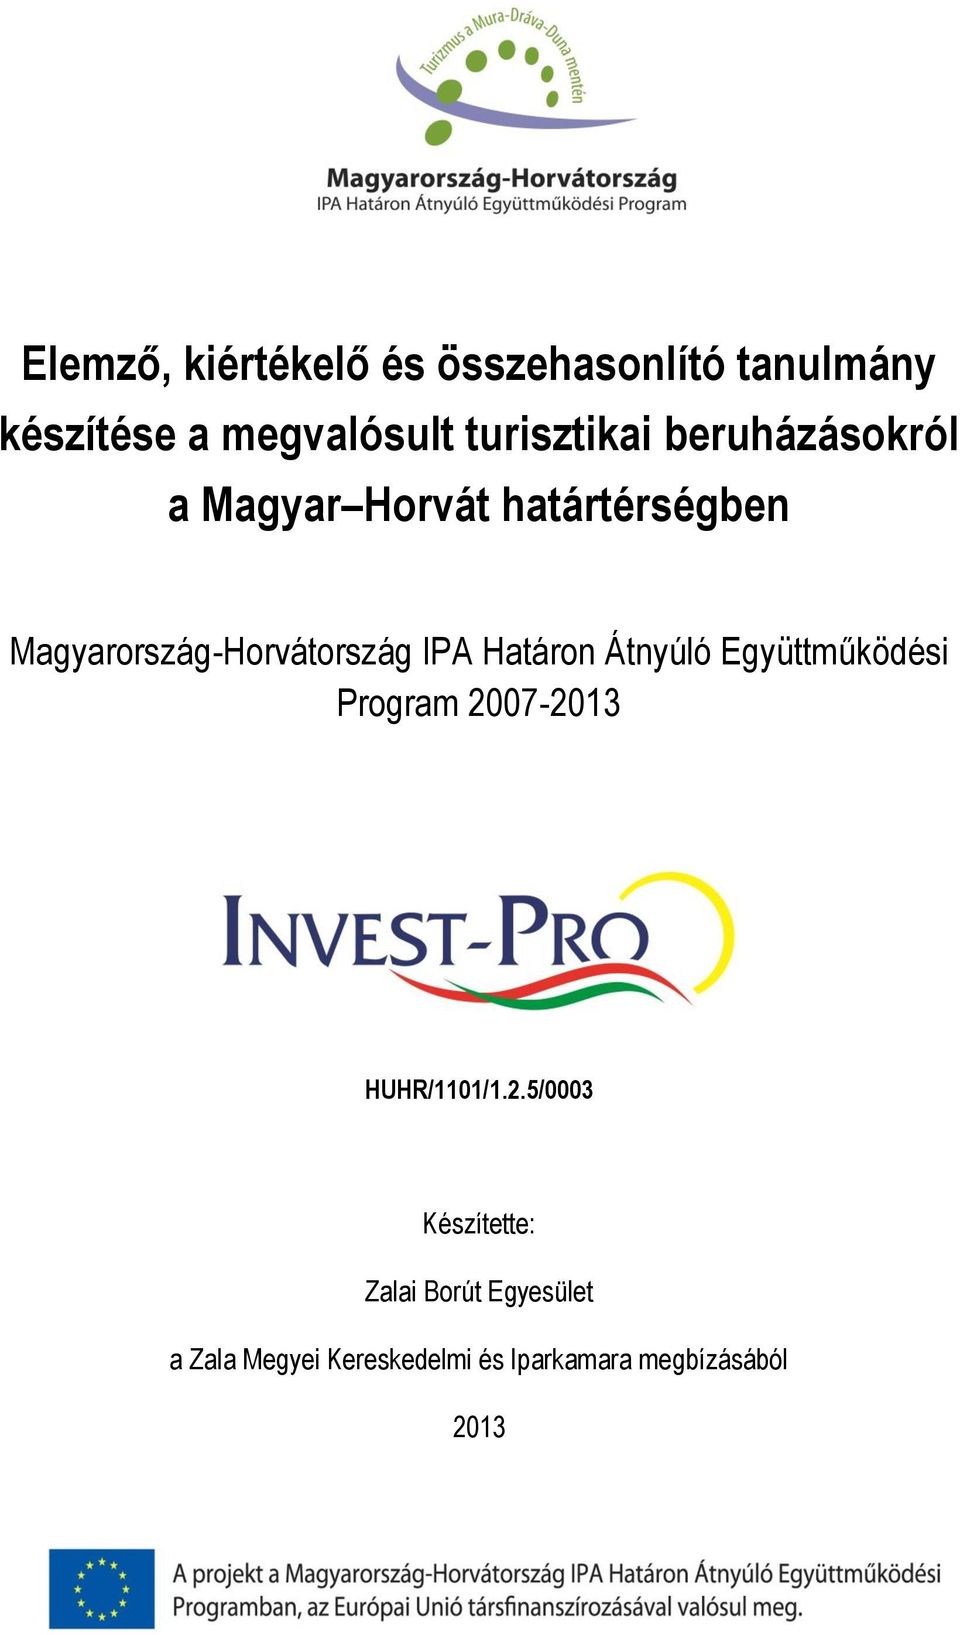 Magyarország-Horvátország IPA Határon Átnyúló Együttműködési Program 2007-2013